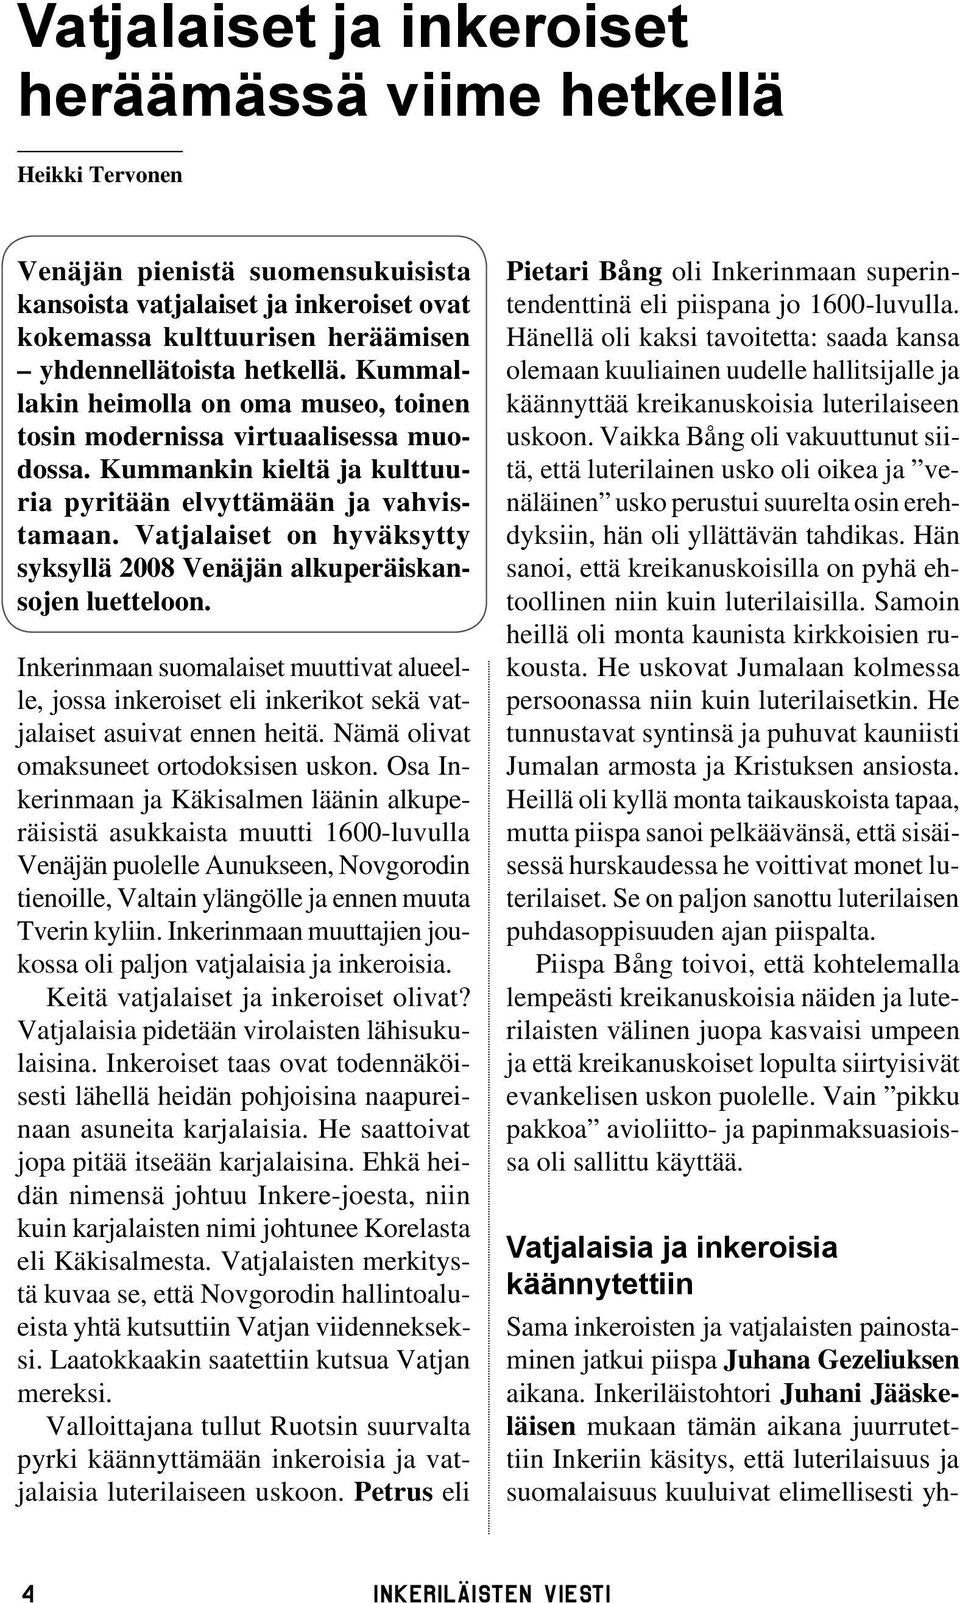 Vatjalaiset on hyväksytty syksyllä 2008 Venäjän alkuperäiskansojen luetteloon. Inkerinmaan suomalaiset muuttivat alueelle, jossa inkeroiset eli inkerikot sekä vatjalaiset asuivat ennen heitä.